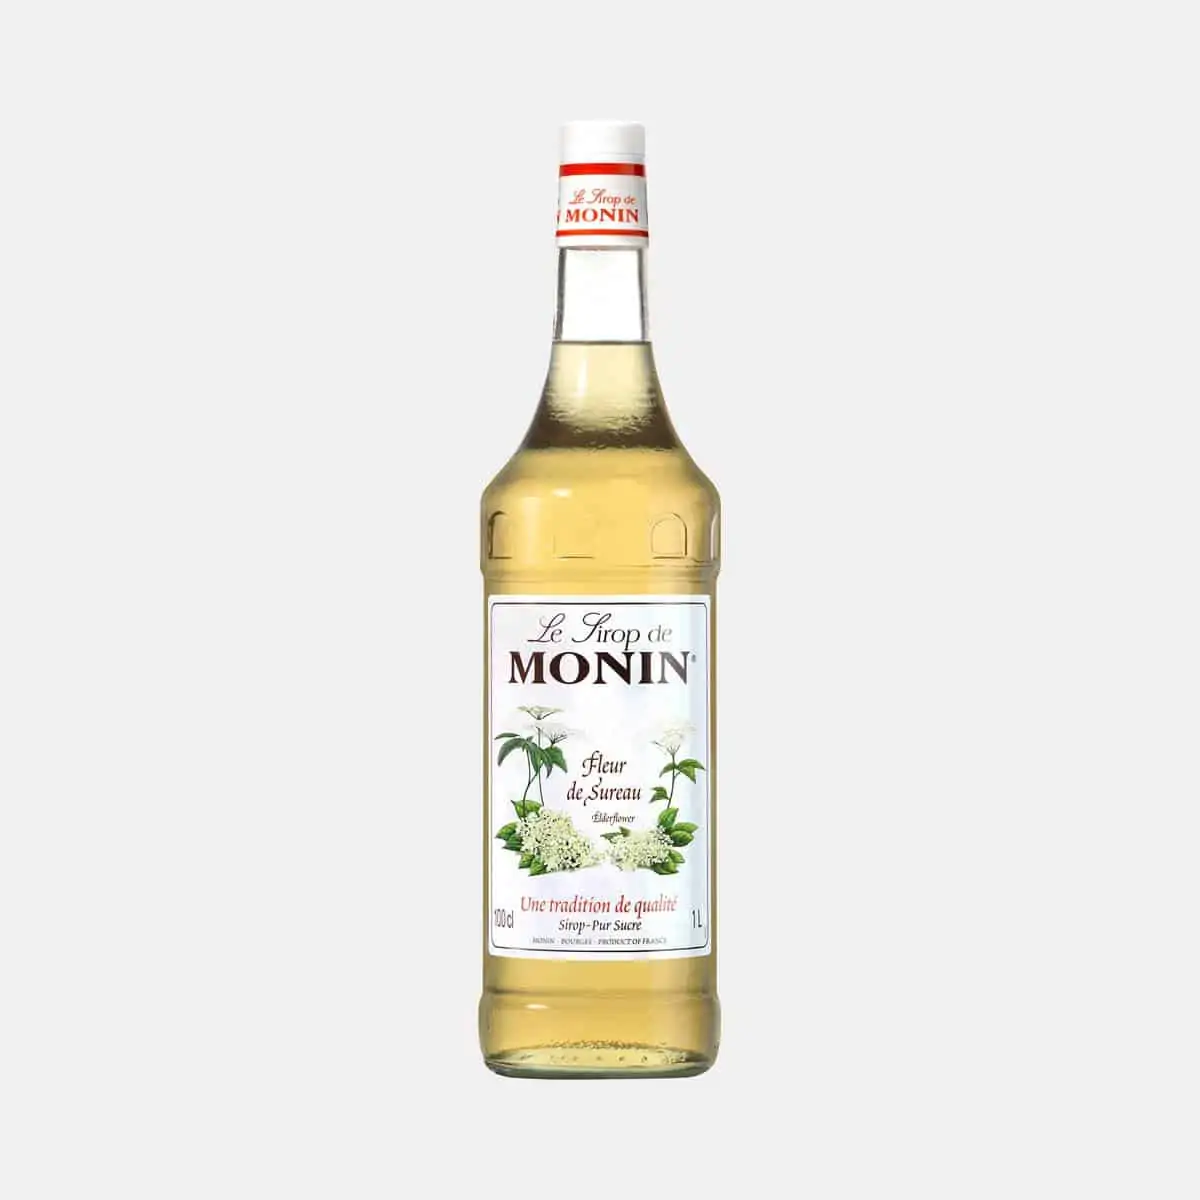 Monin Elderflower Syrup 1 Liter Glass Bottle